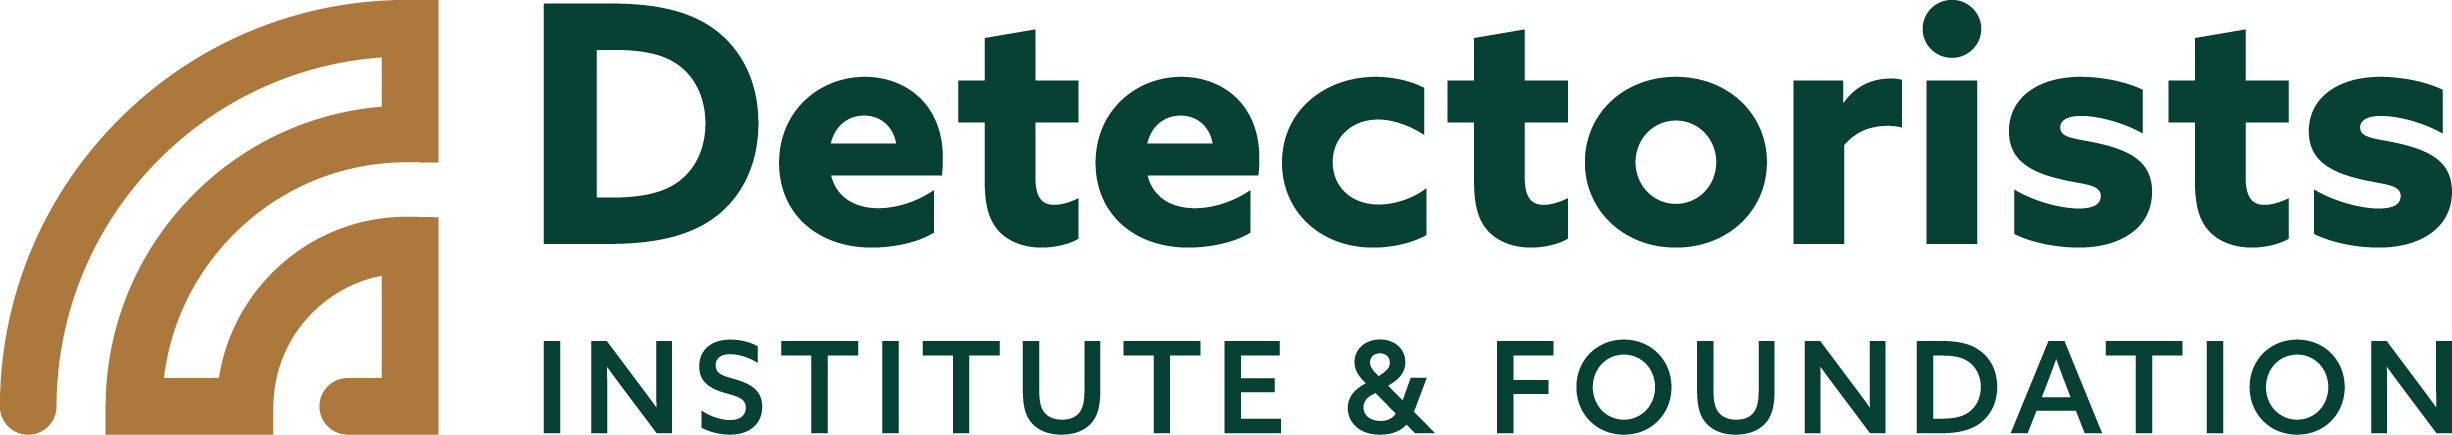 Detectorists Institute & Foundation logo